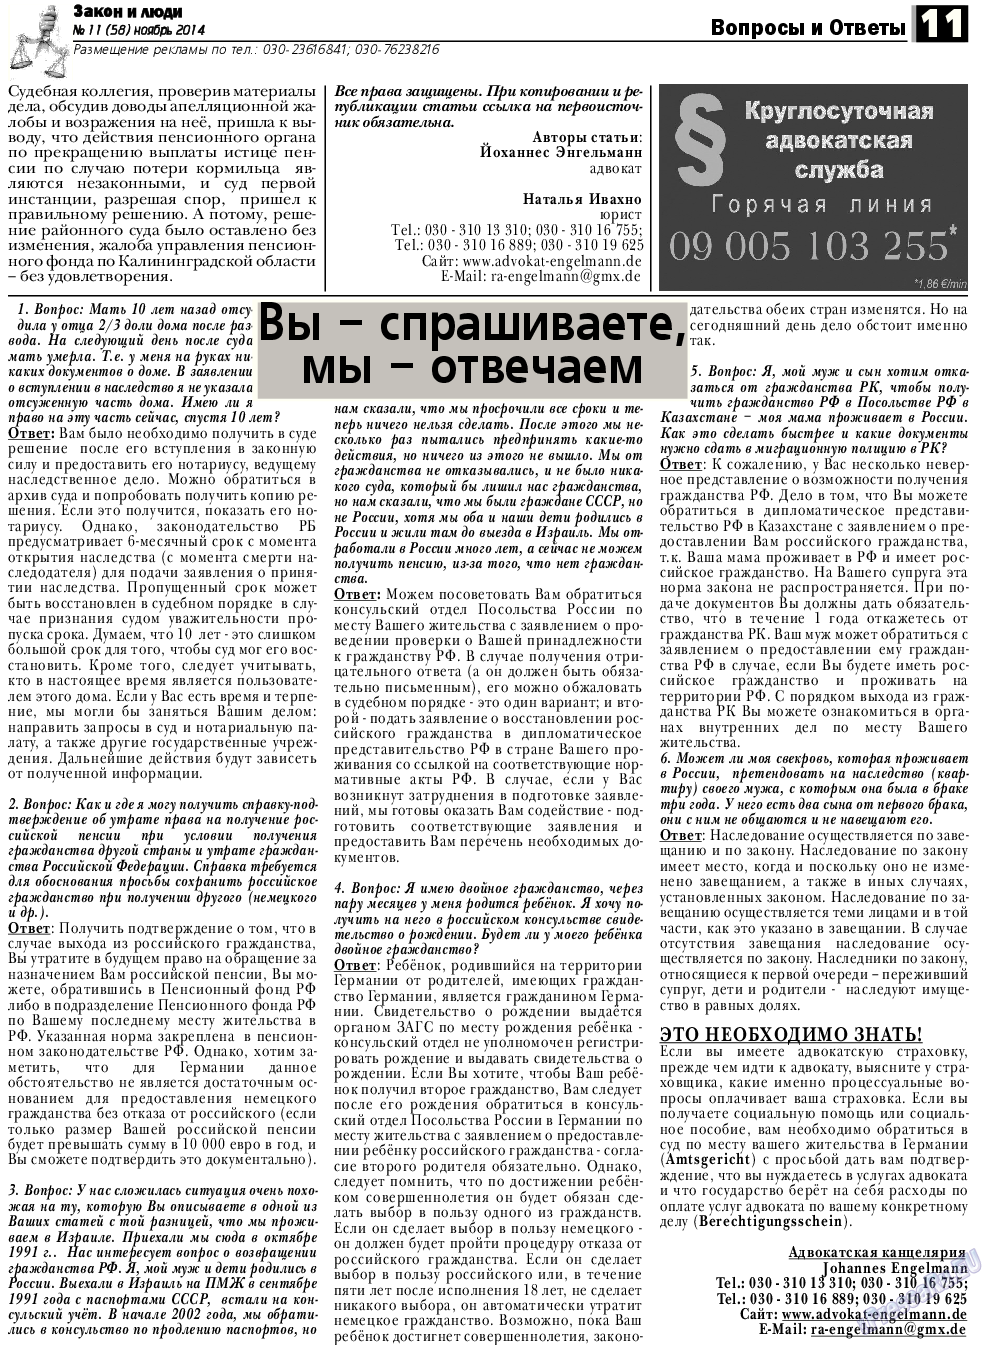 Закон и люди, газета. 2014 №11 стр.11